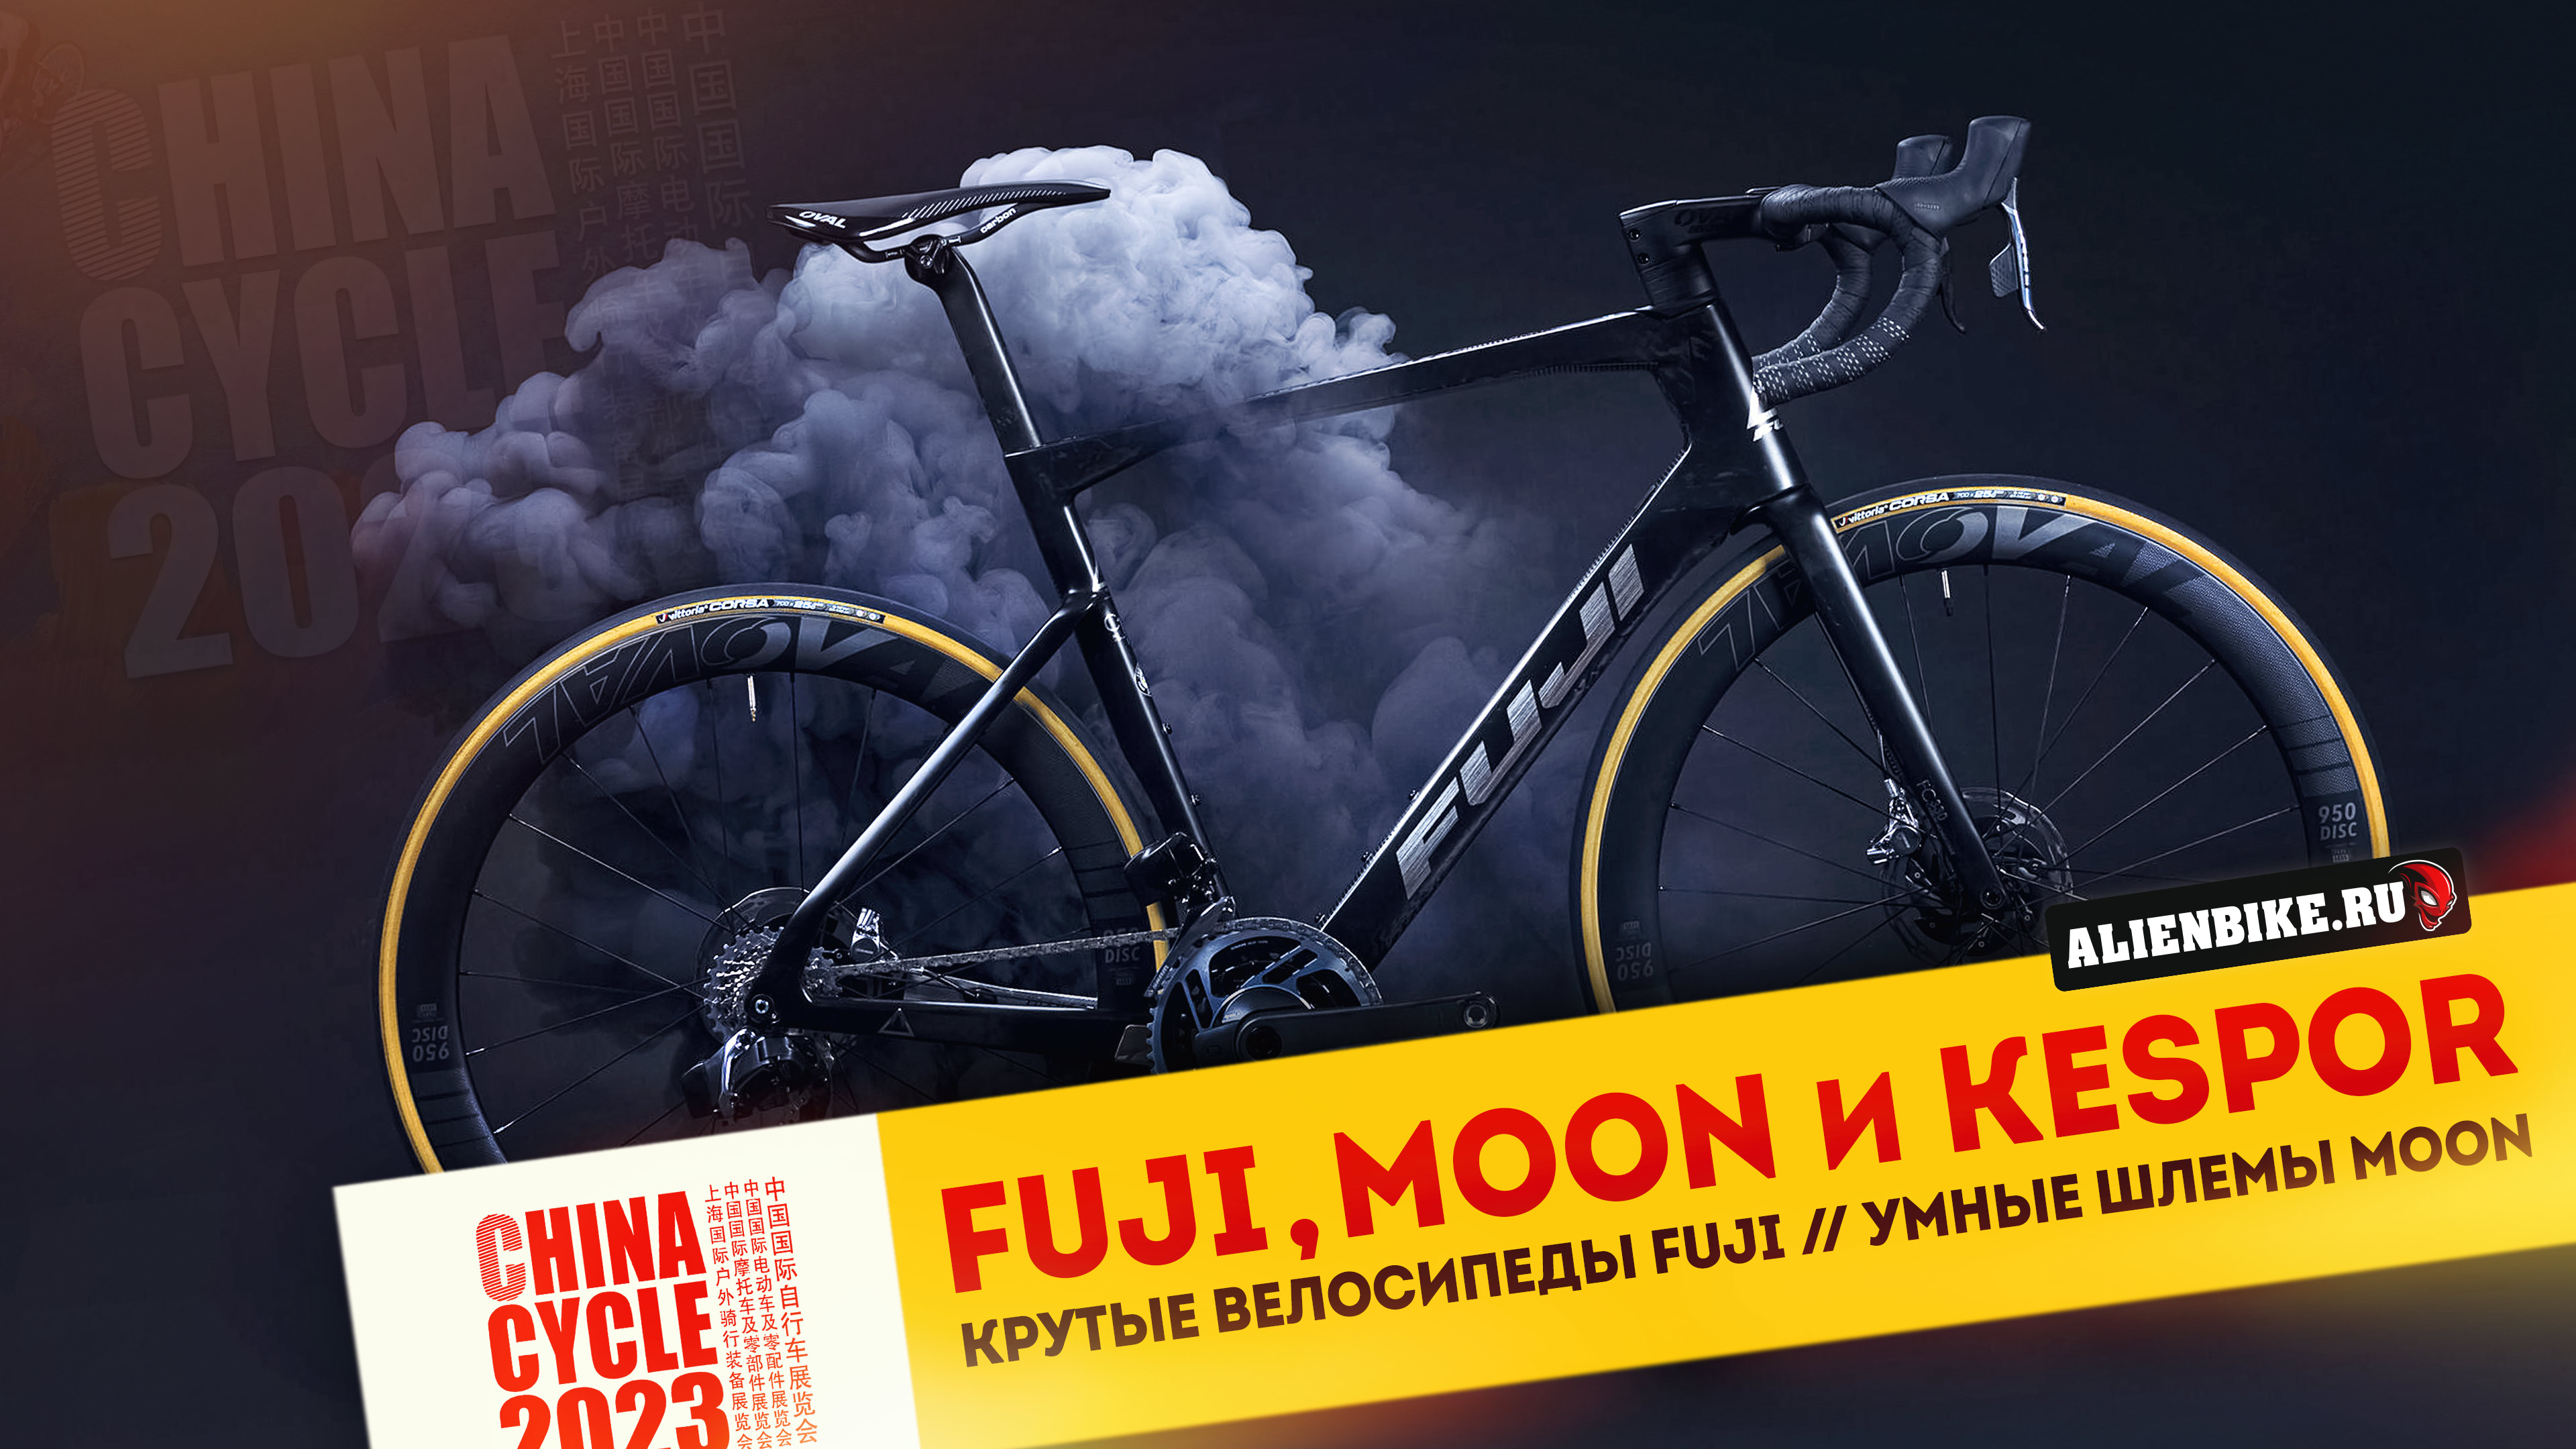 Крутые велосипеды Fuji // Электро-фэтбайк от Kespor // Умные шлемы MOON | China Cycle 2023